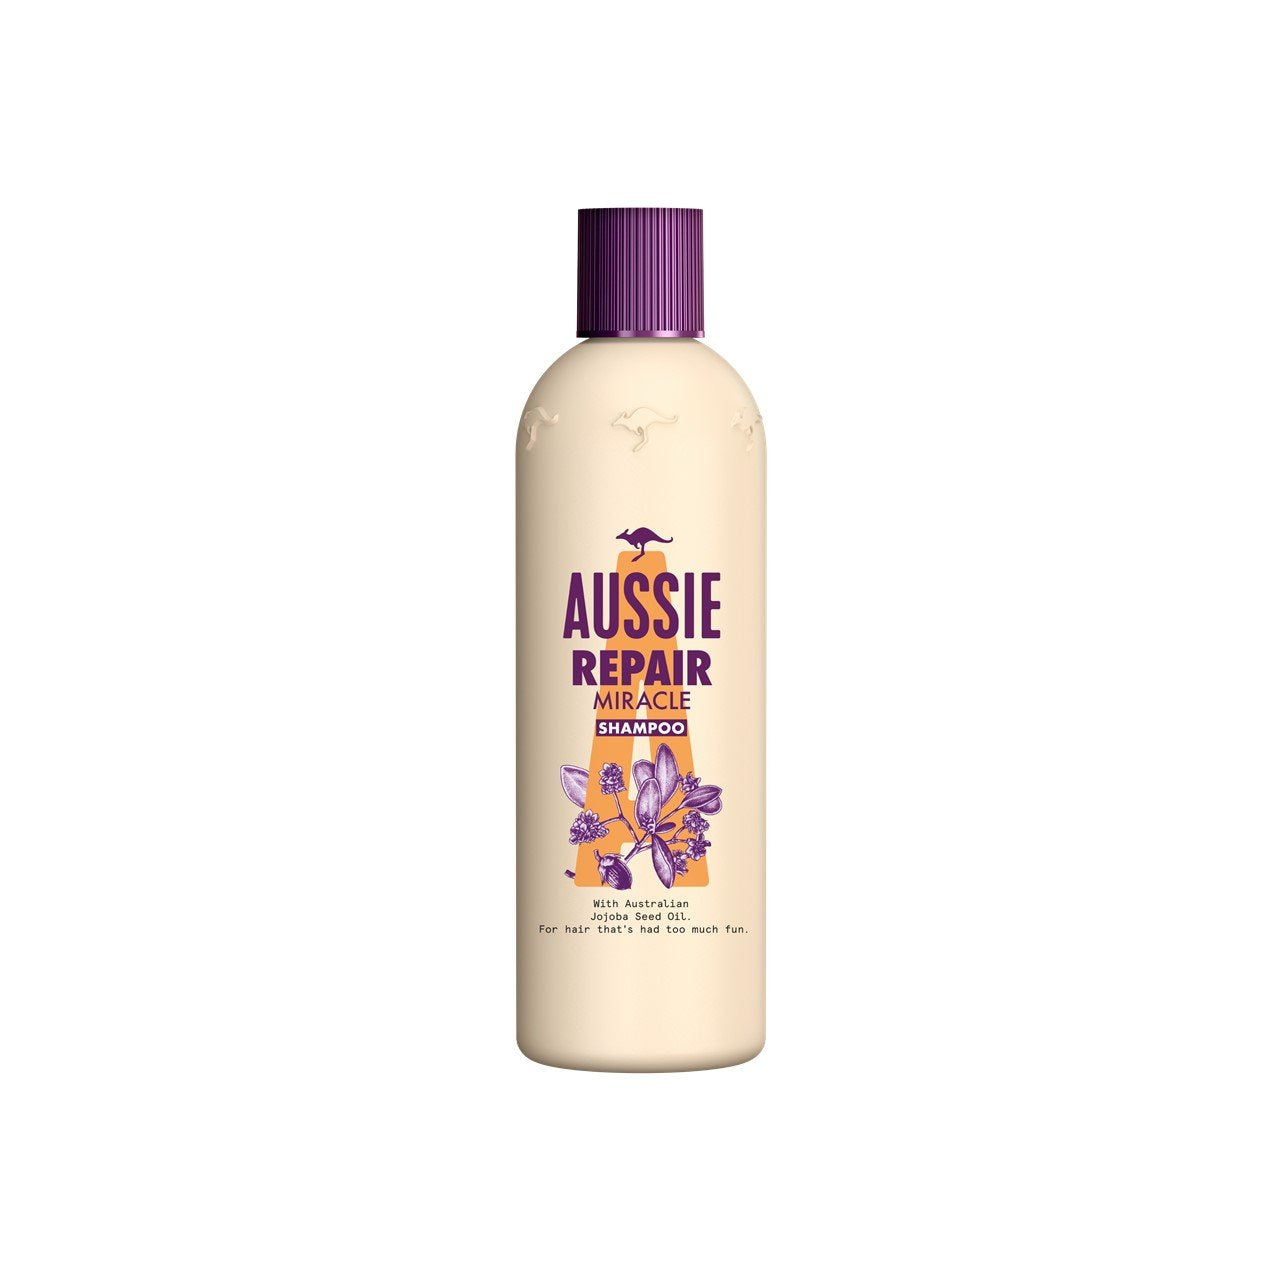 Aussie Repair Miracle Shampoo 300ml